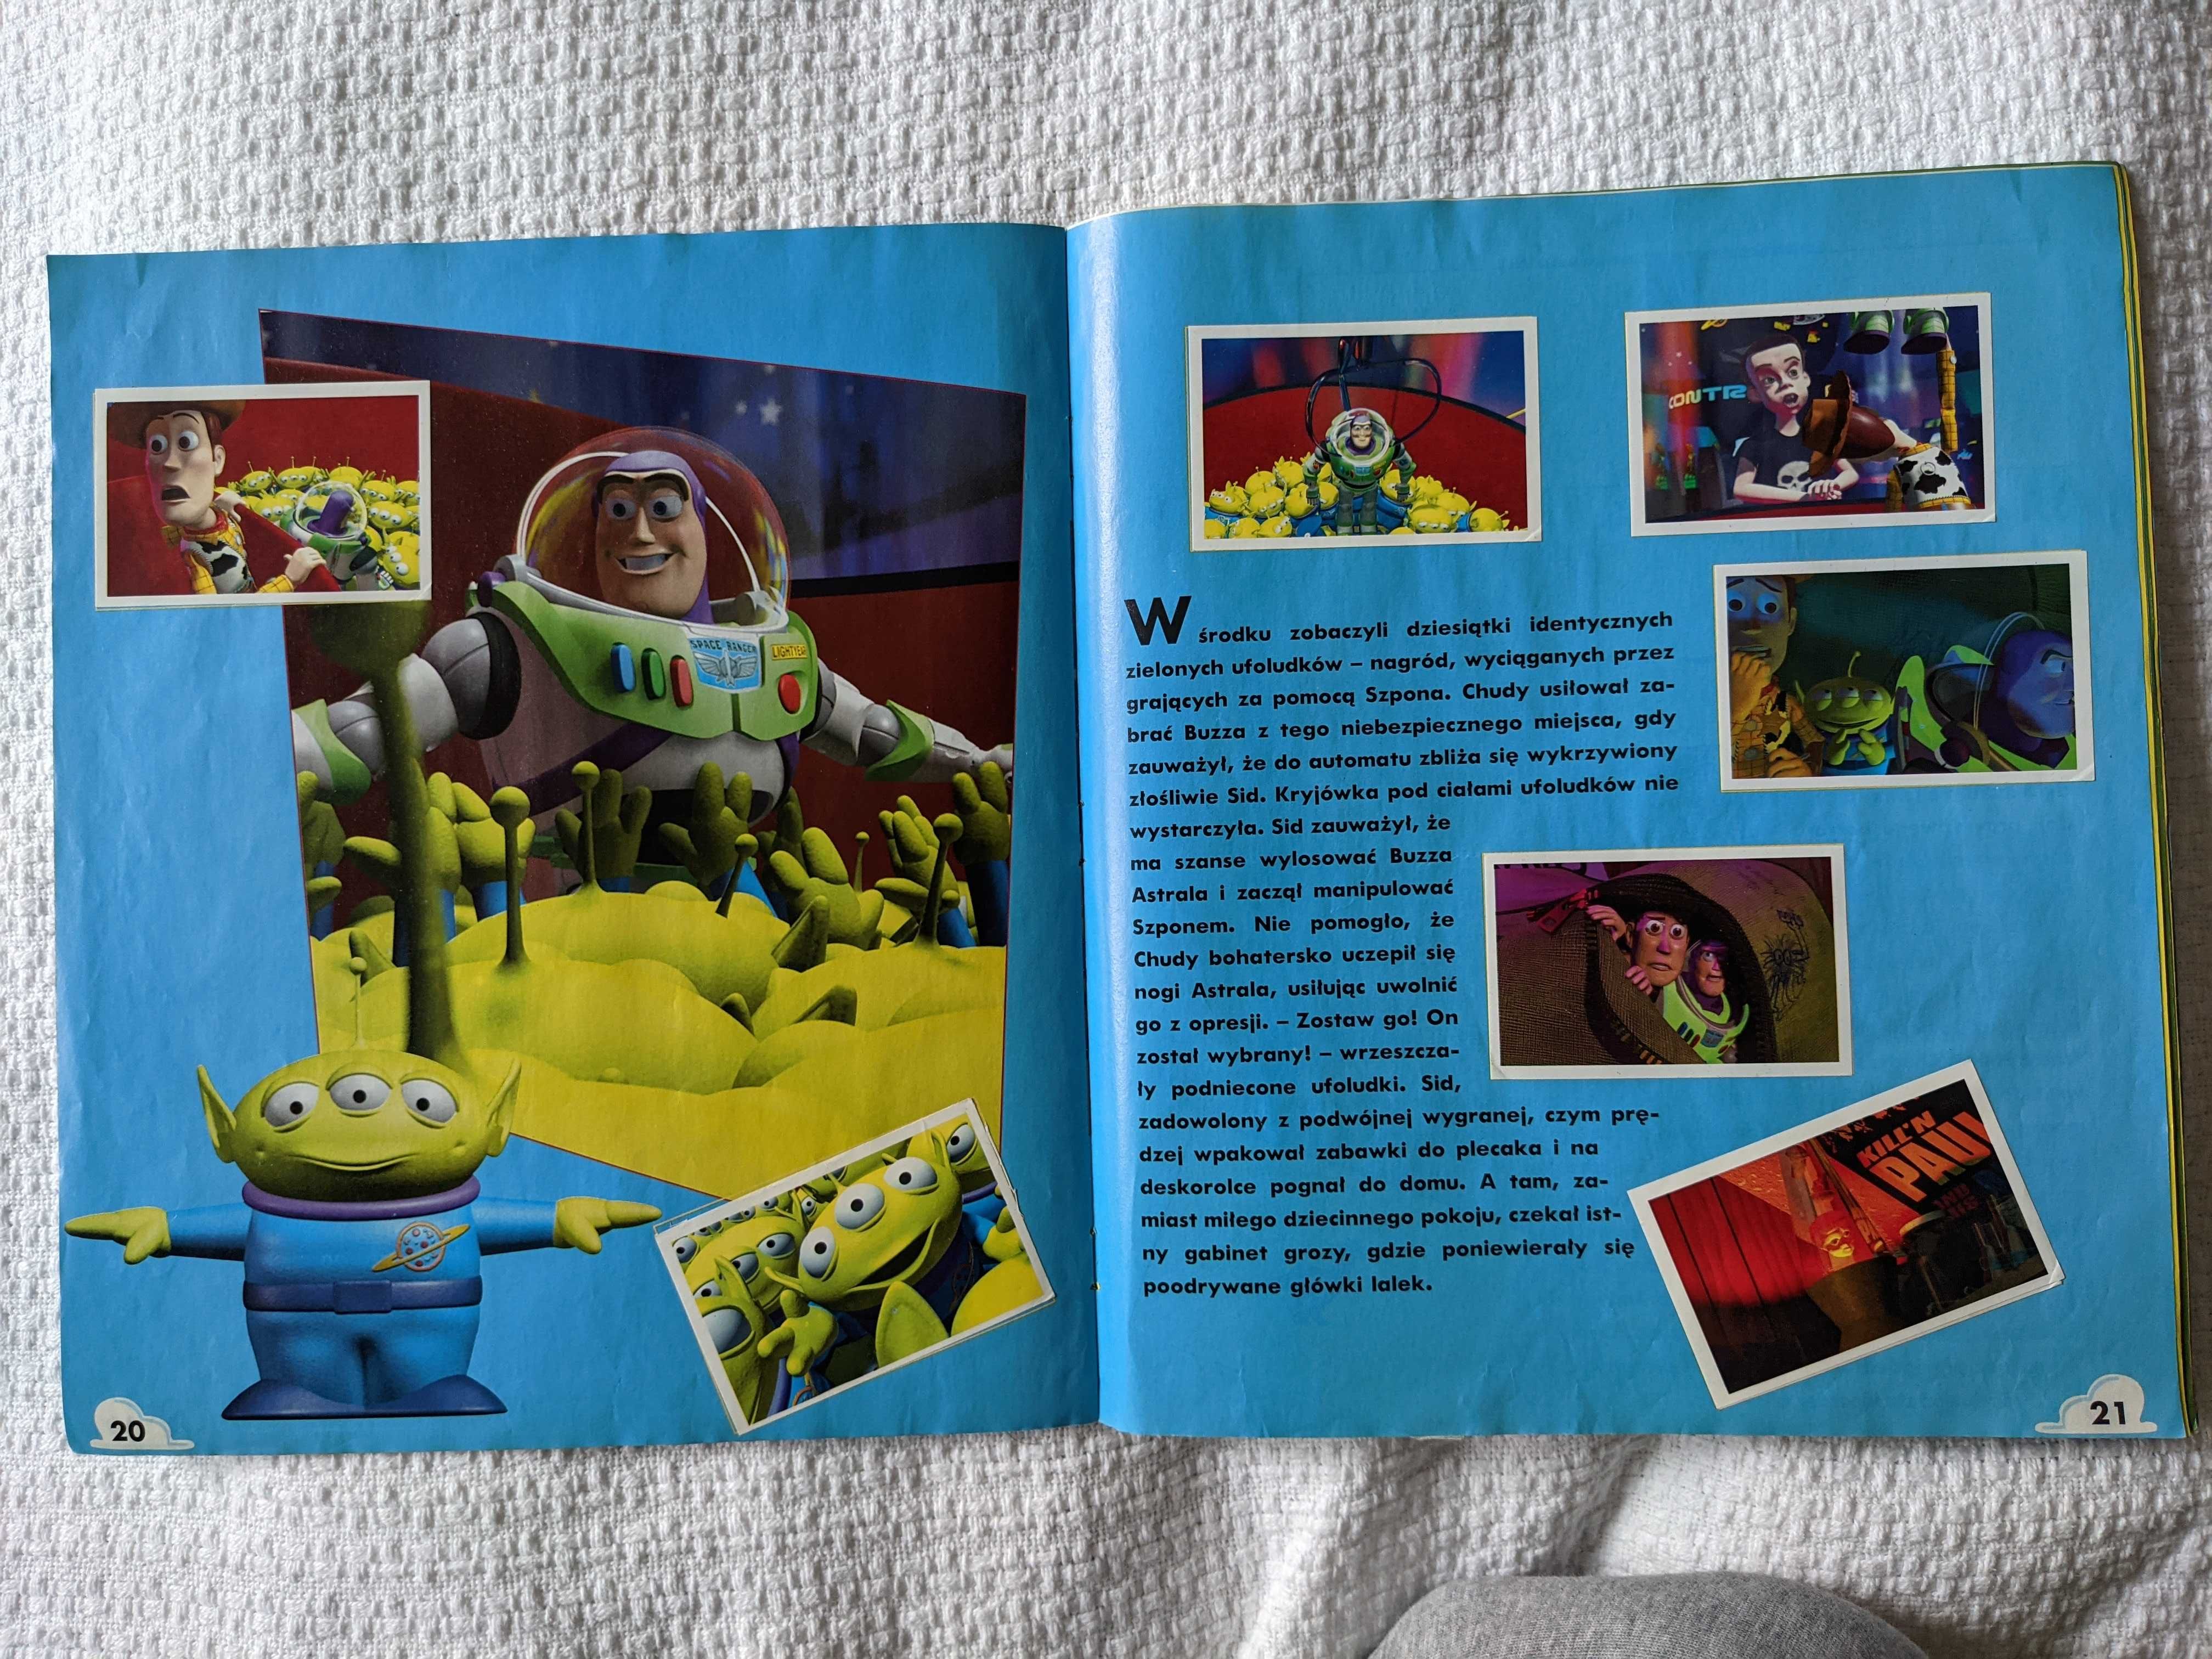 Toy Story, album Panini z kompletem naklejek, UNIKAT w świetnym stanie